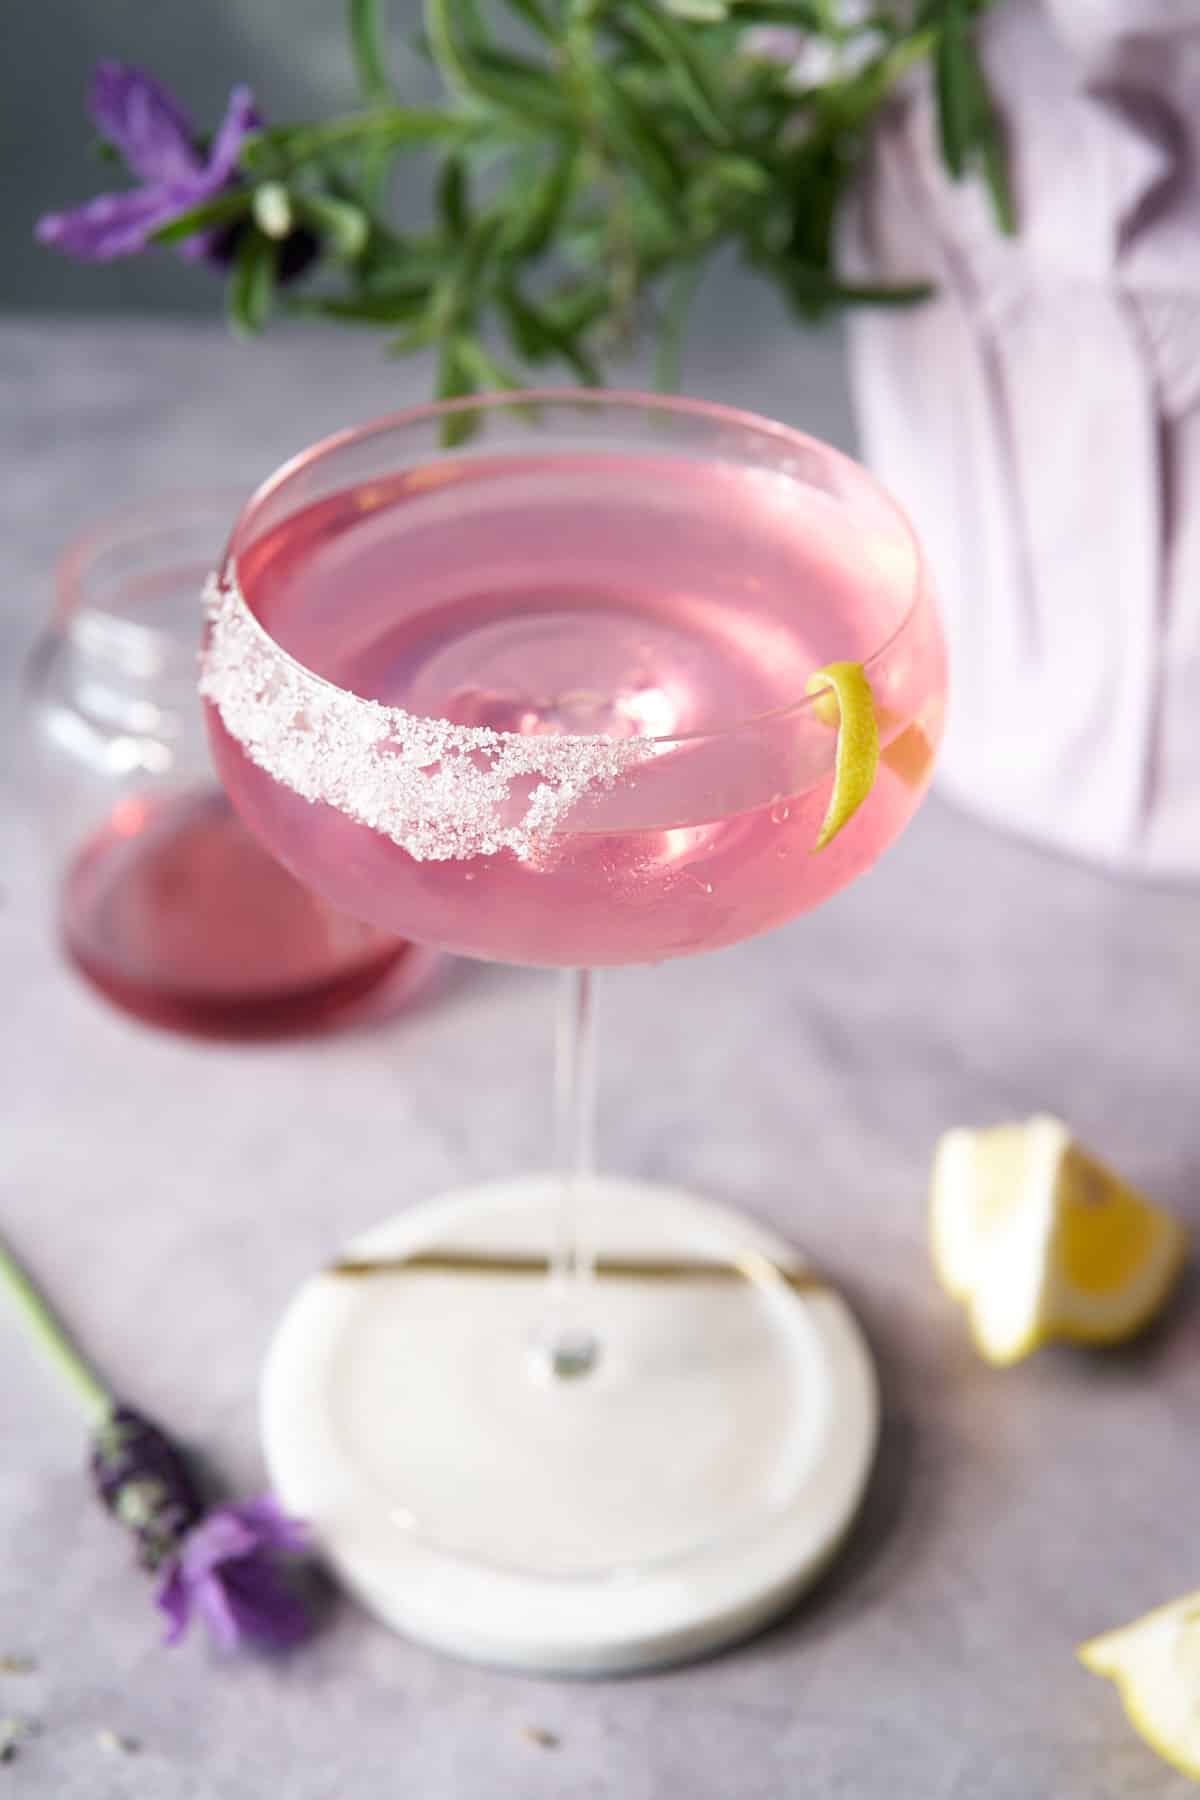 lavender martini in glass at upward angle